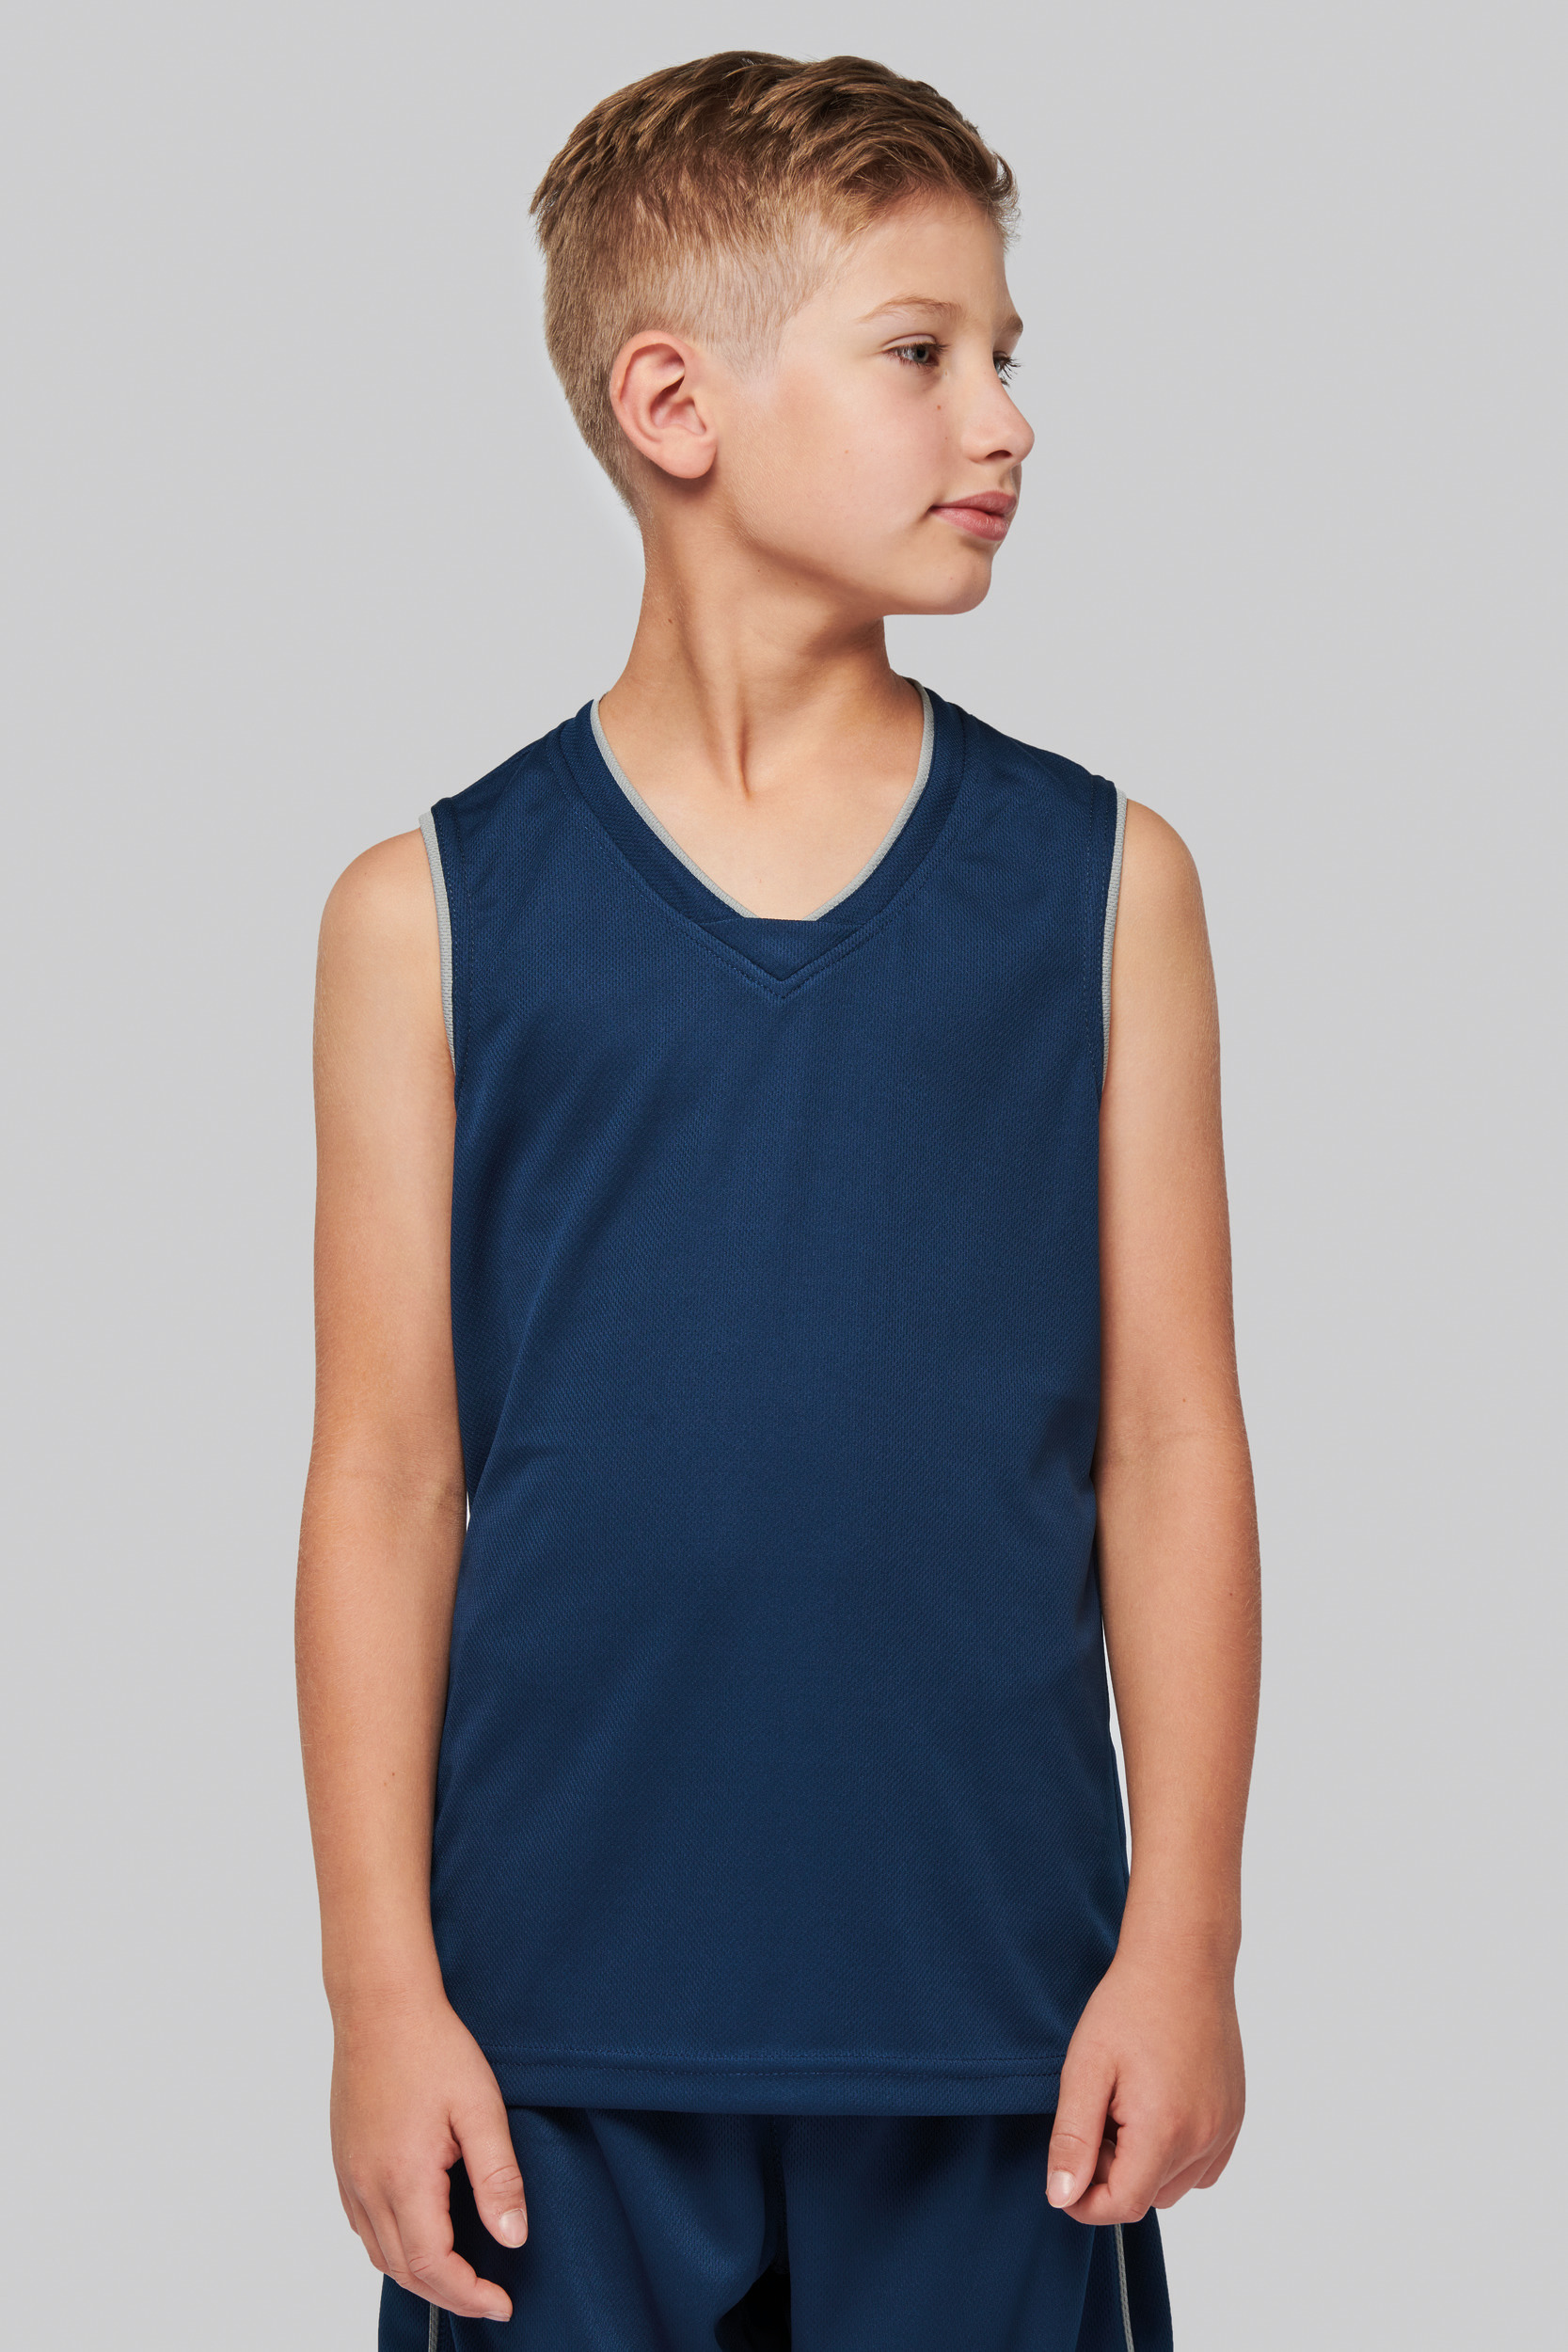 Camiseta de baloncesto personalizada para niño